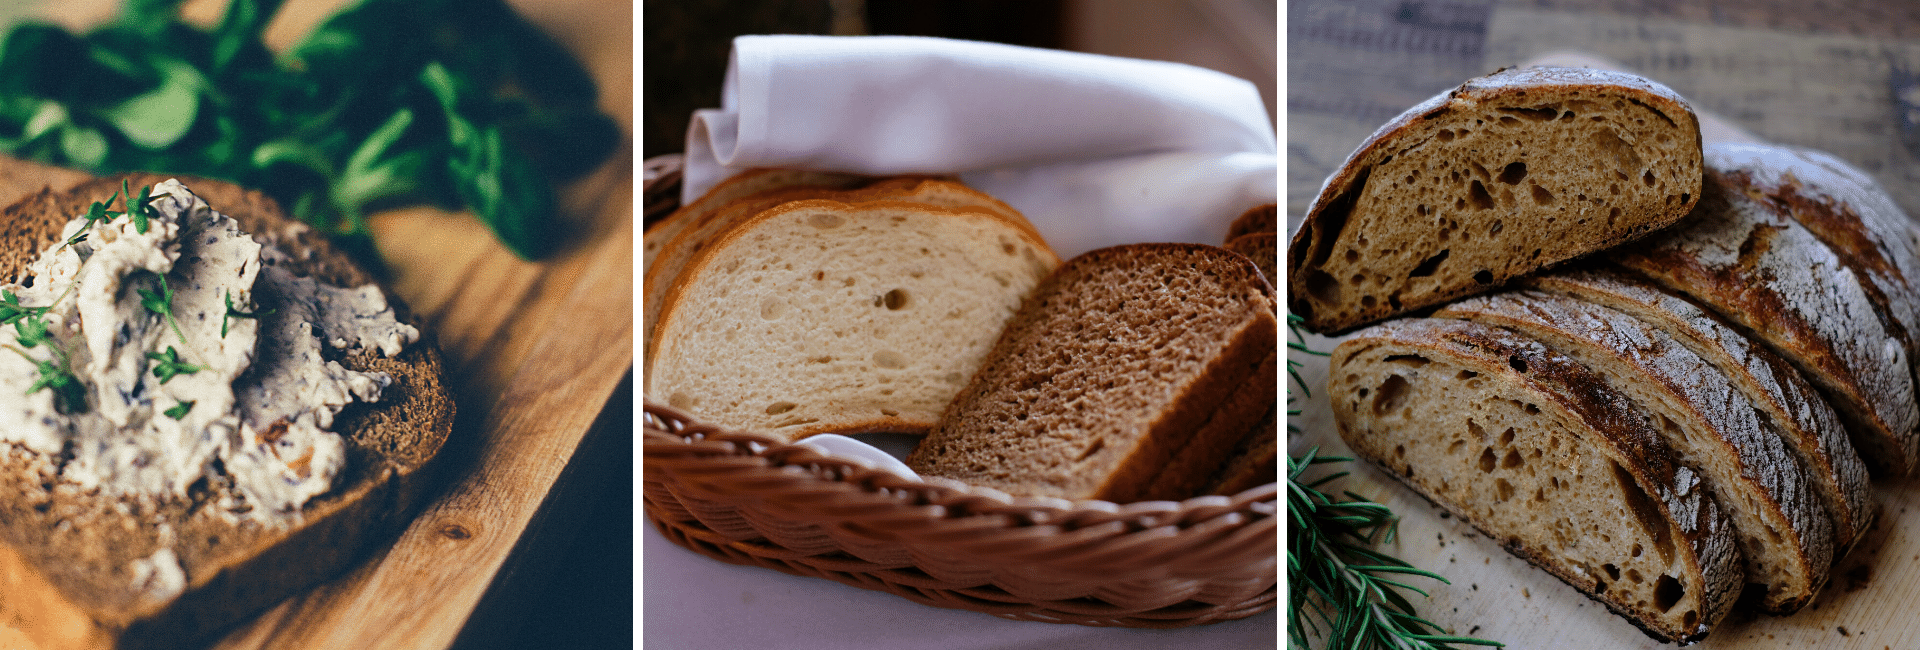 Le pain au sarrasin est meilleur pour la santé